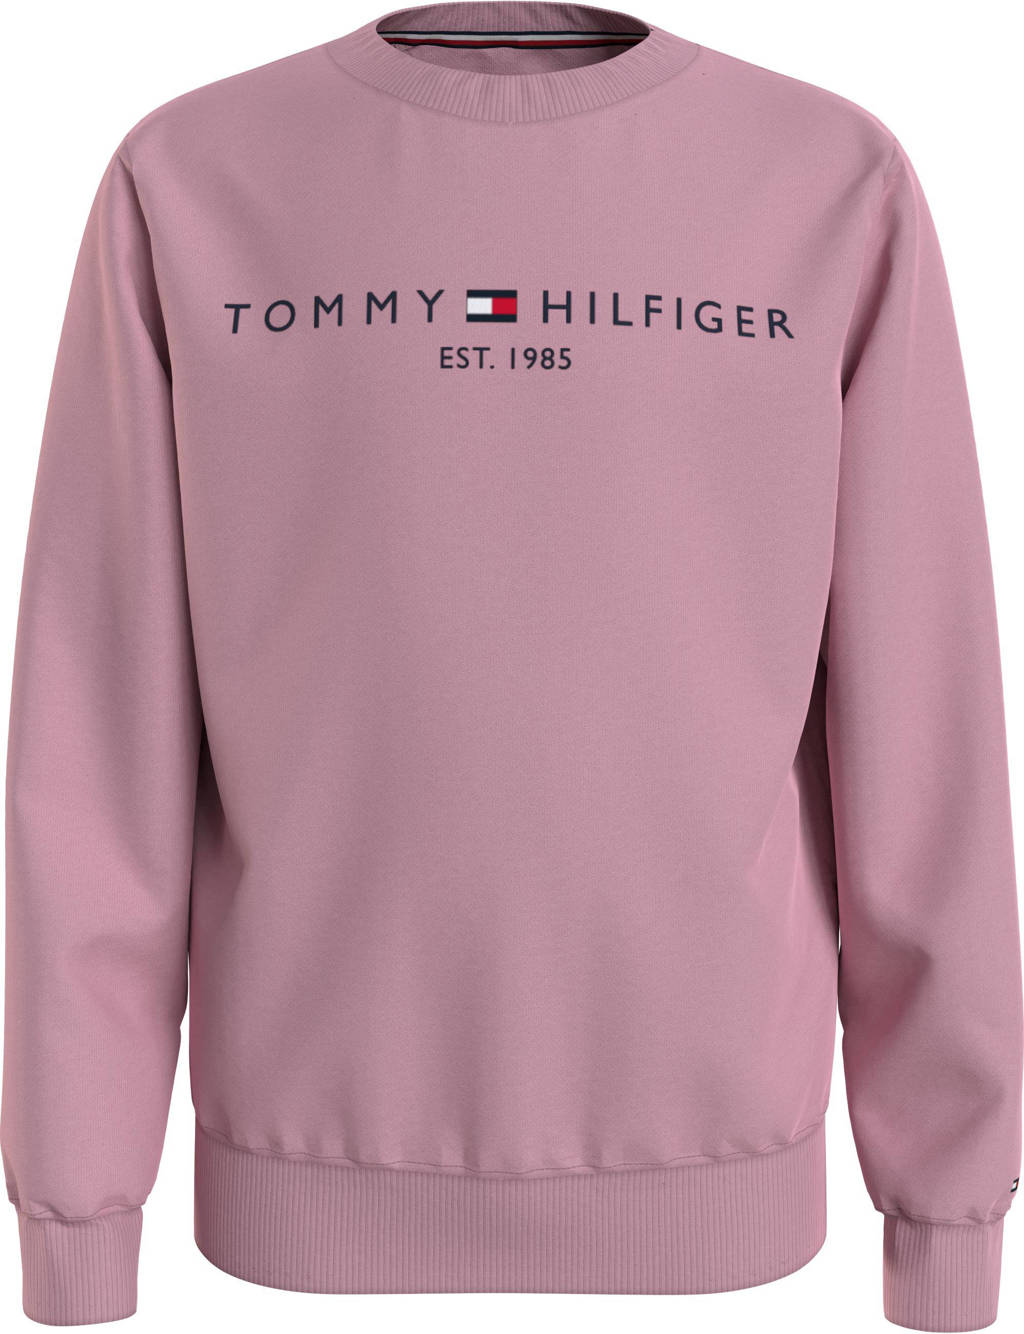 Roze jongens en meisjes Tommy Hilfiger sweater van biologisch katoen met lange mouwen, ronde hals en geribde boorden